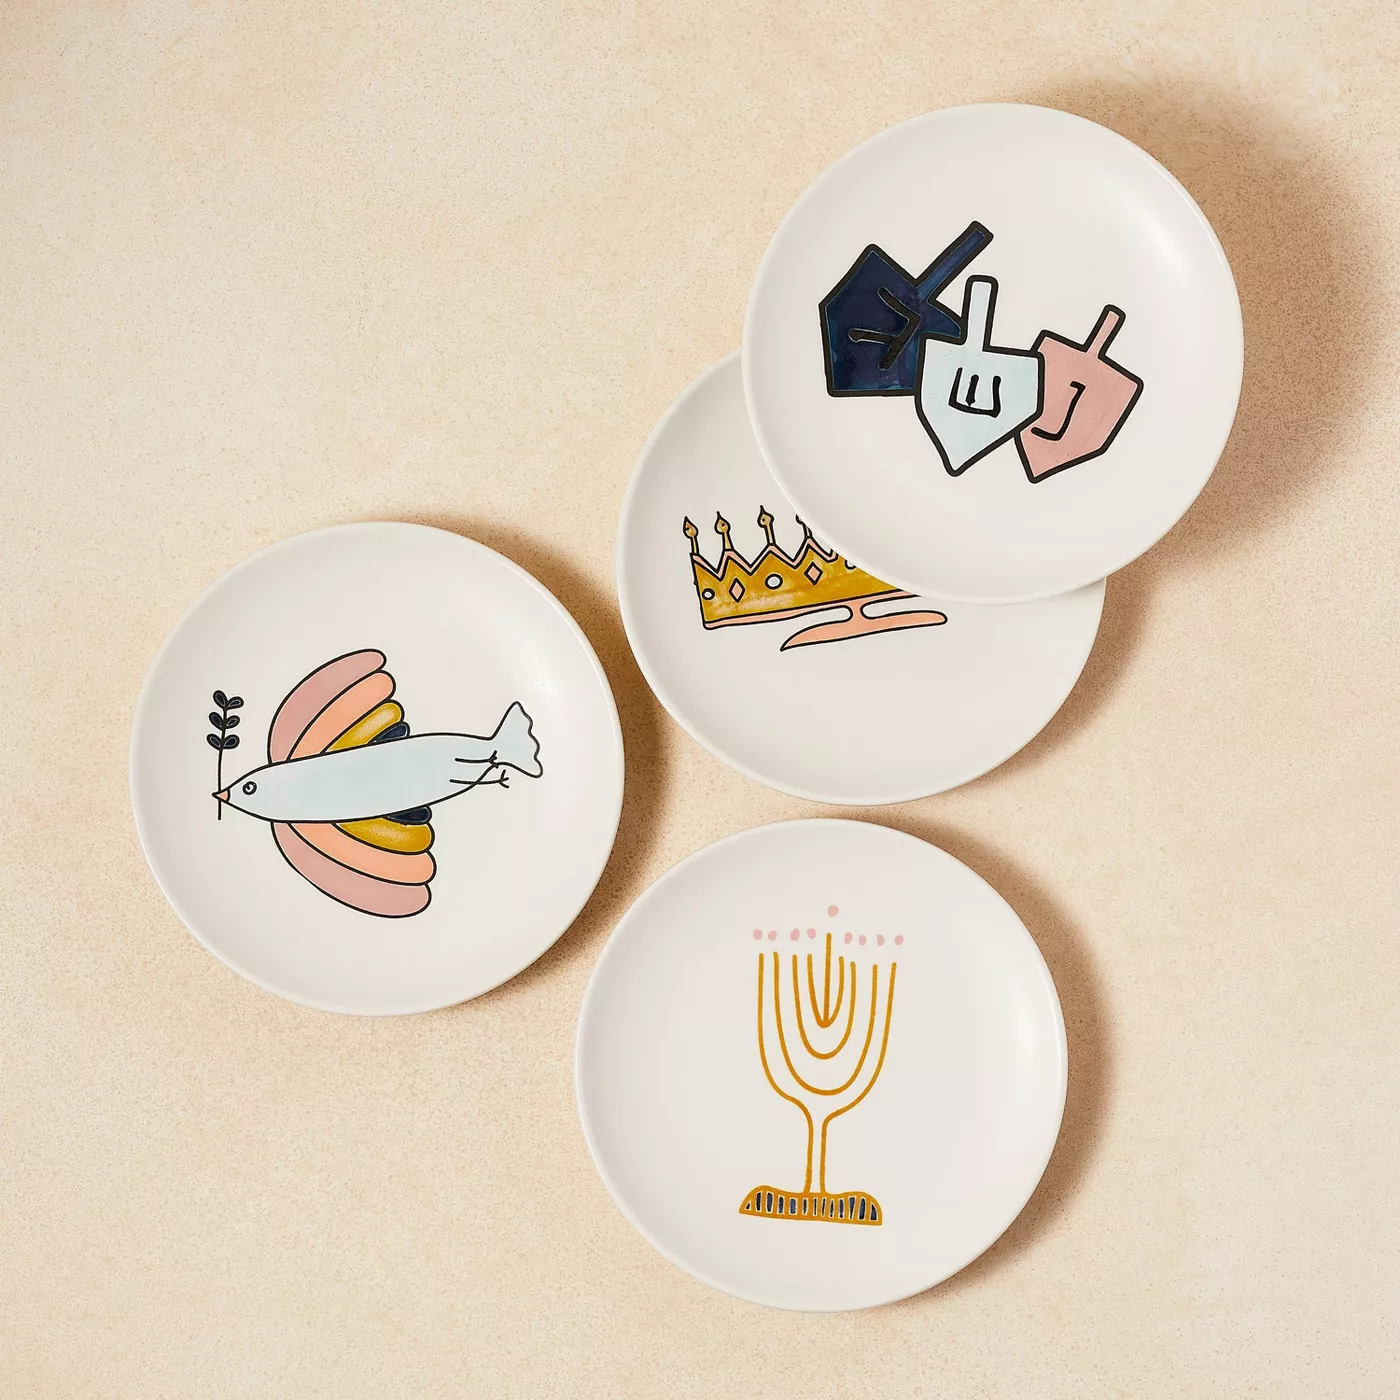 Hanukkah appetizer plates